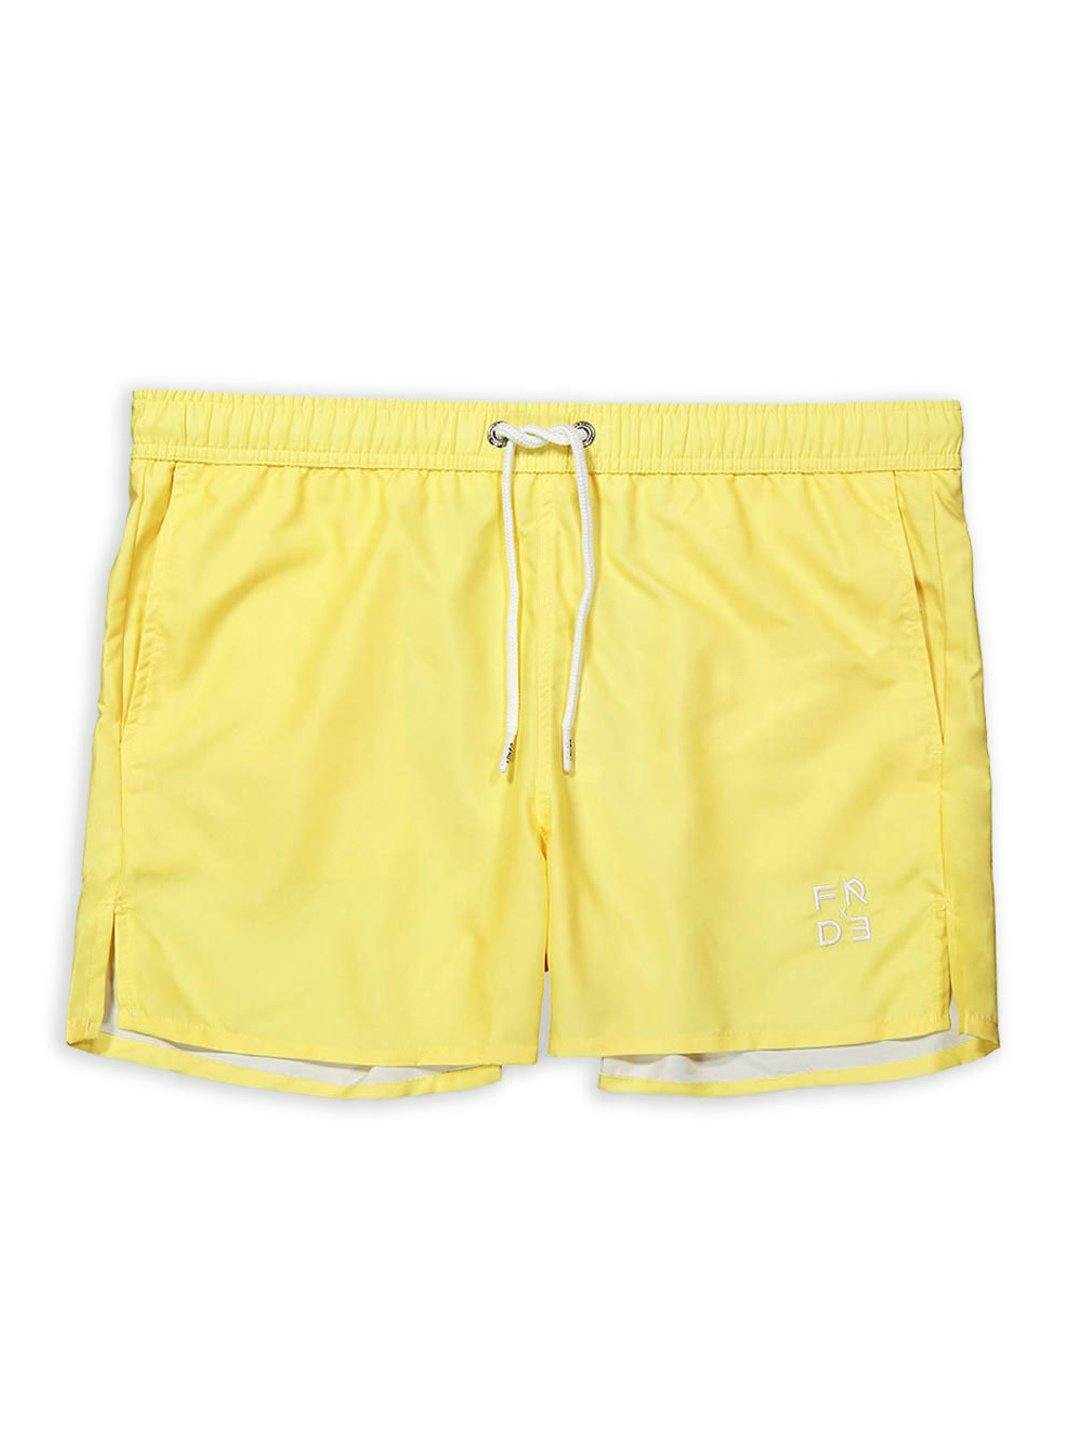 The Yellow Swim Shorts